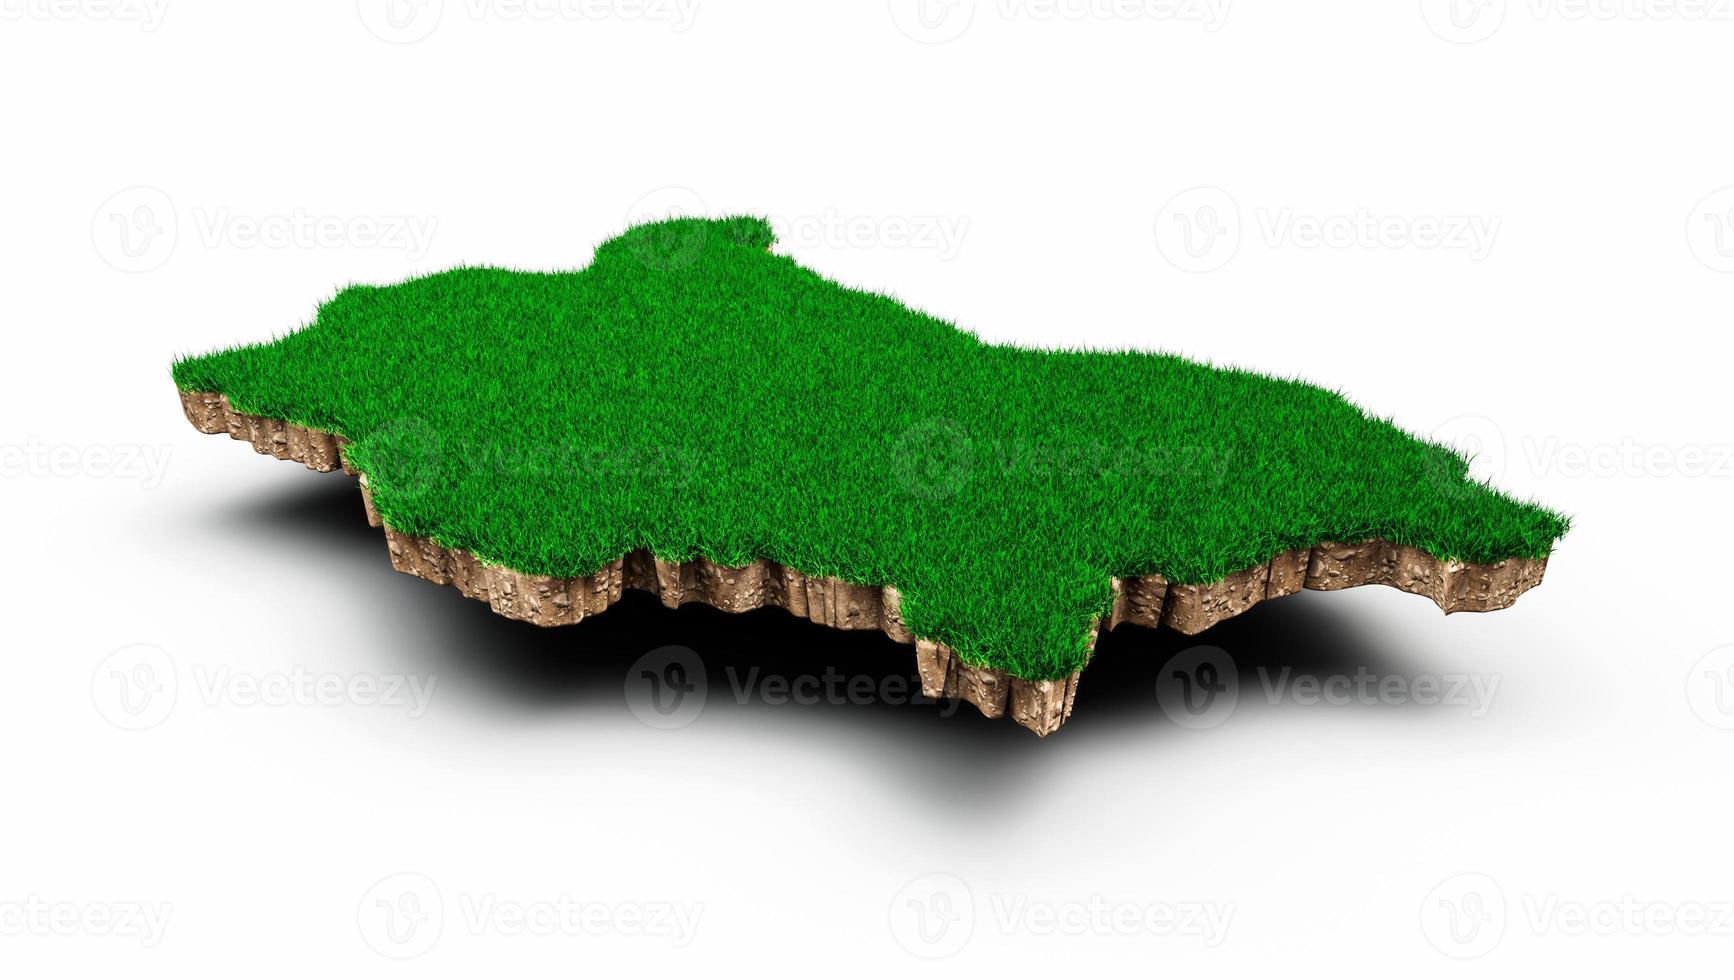 carte de la bulgarie coupe transversale de la géologie des sols avec de l'herbe verte et de la texture du sol rocheux illustration 3d photo